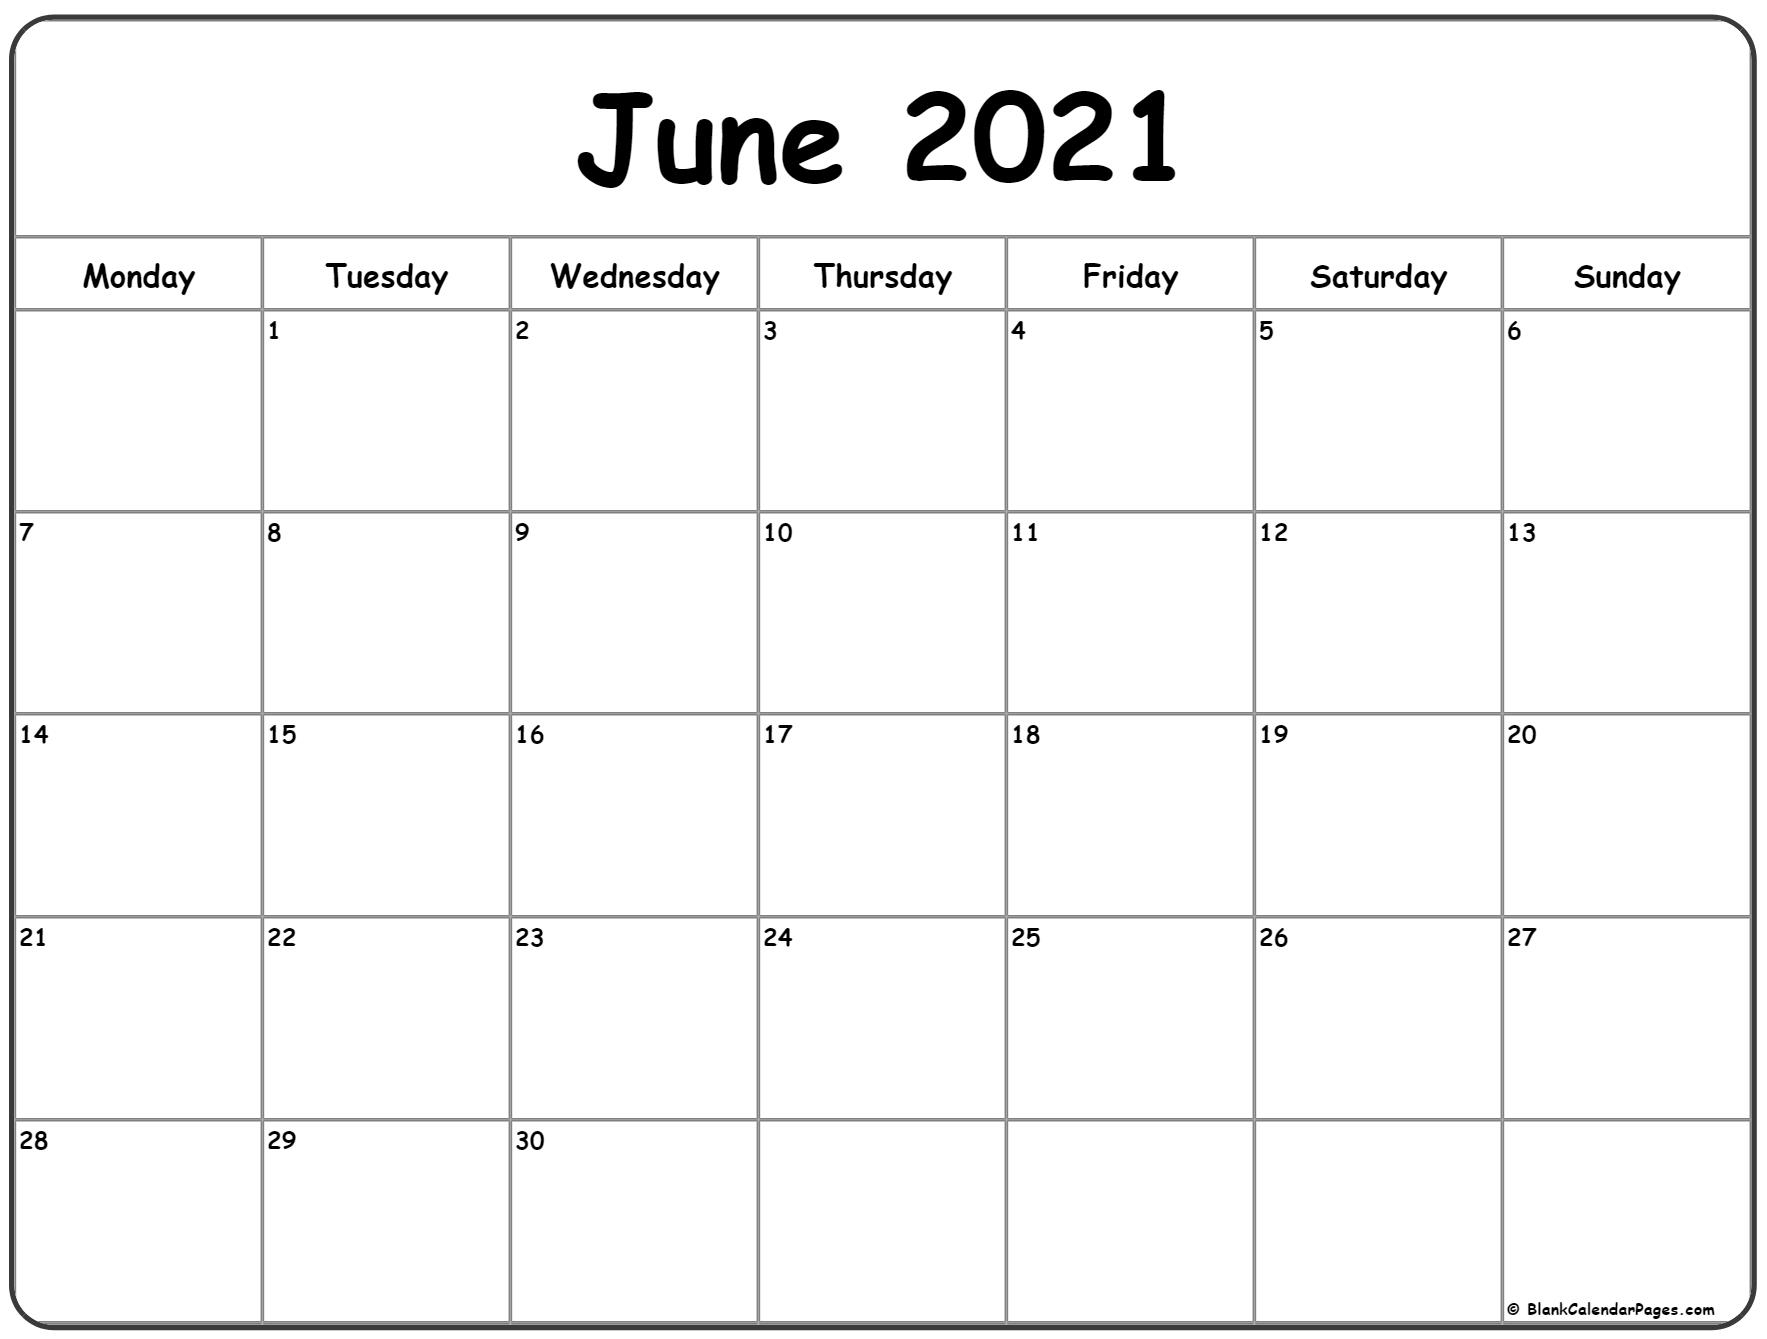 June 2021 Calendar - Calendar 2021